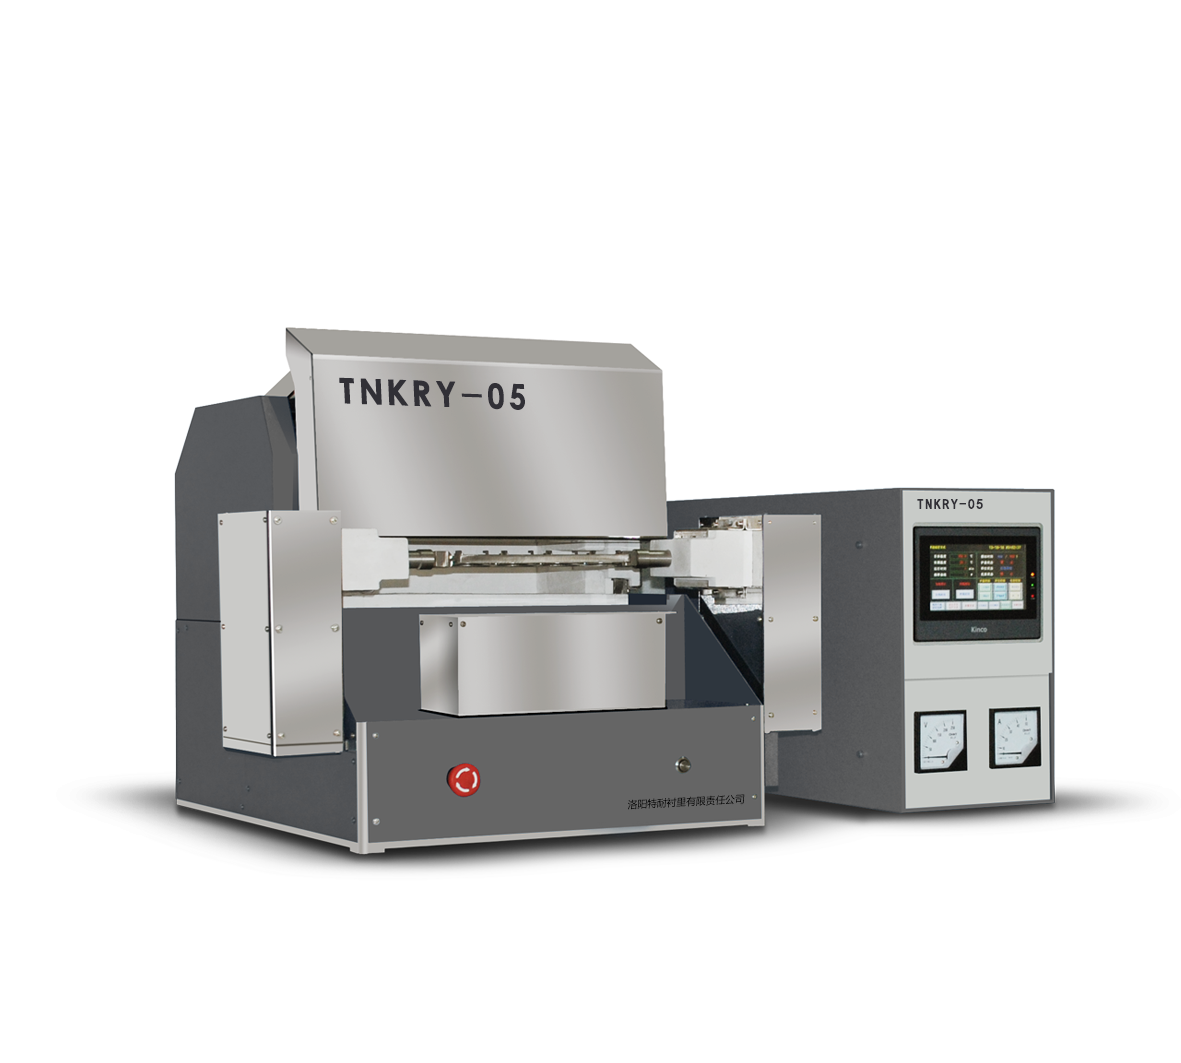 TNKRY-05型号特耐熔样机